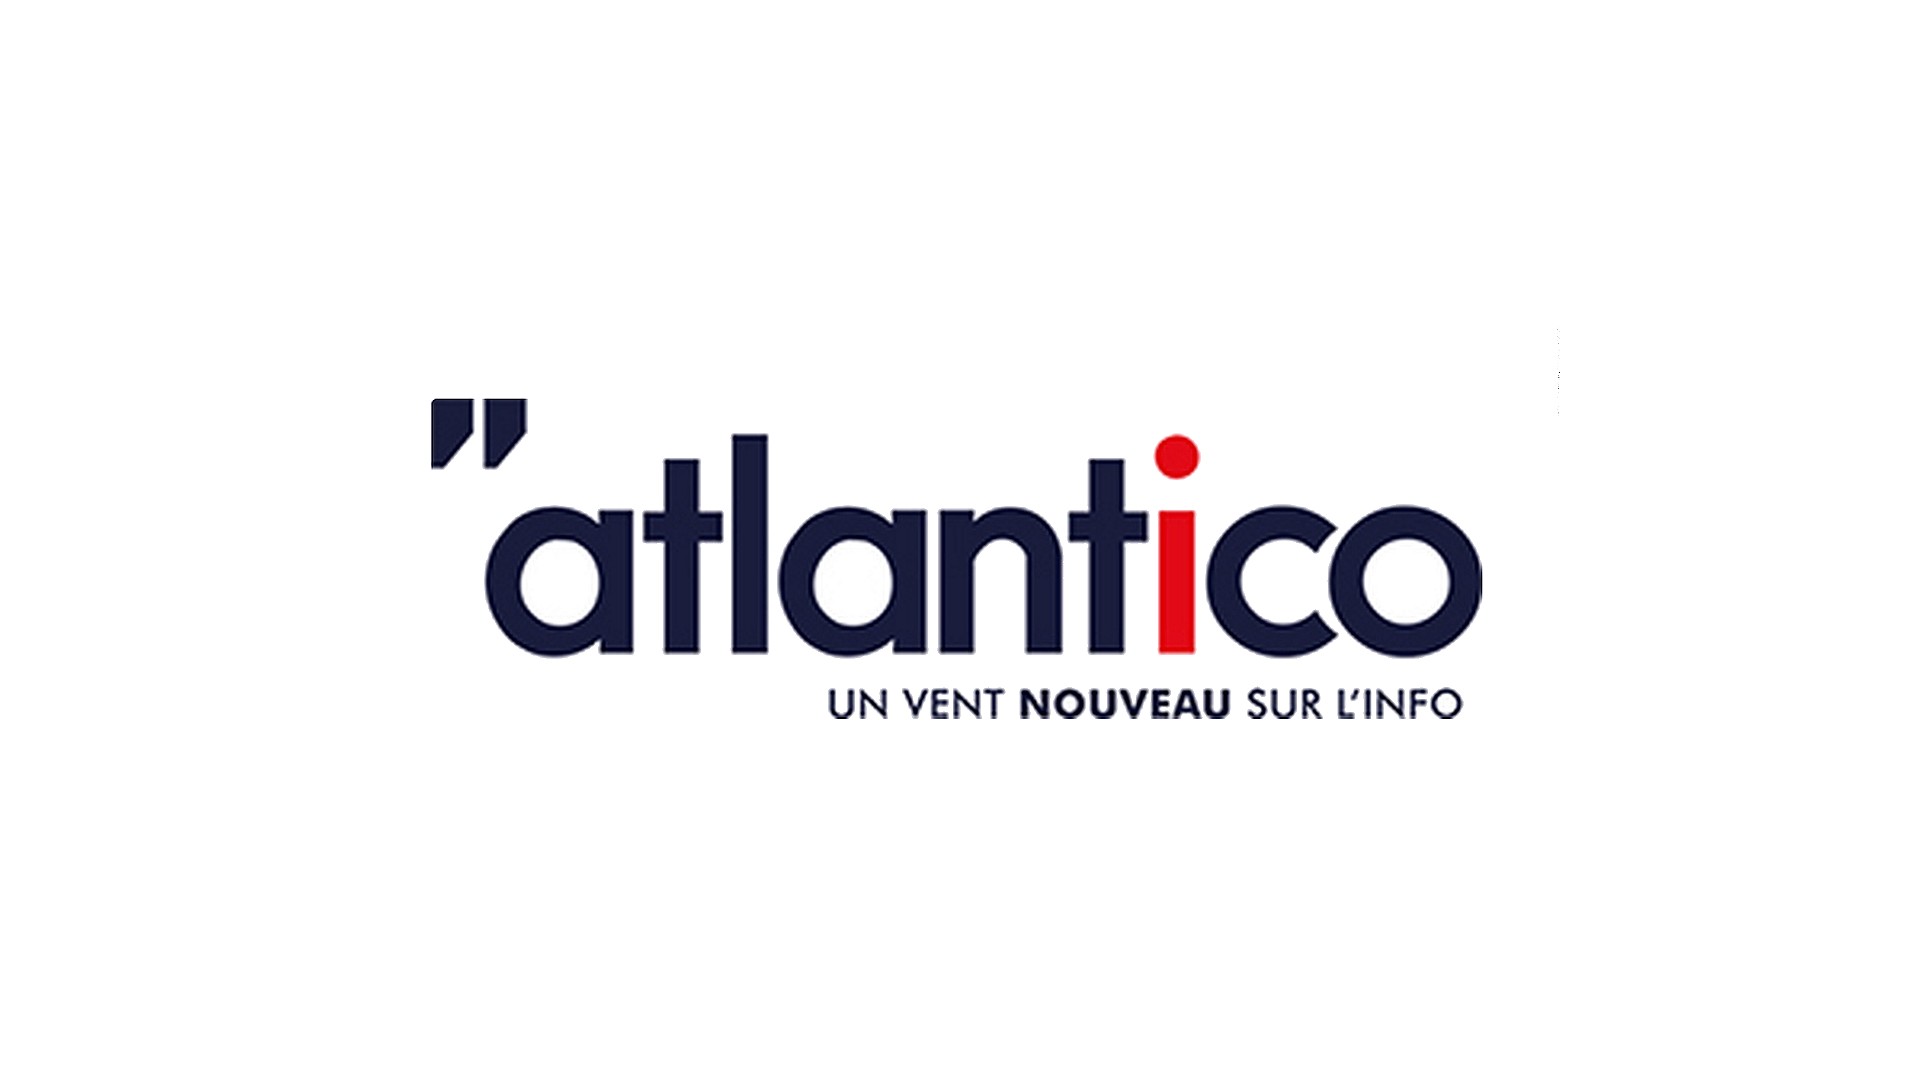 Atlantico (1) logo